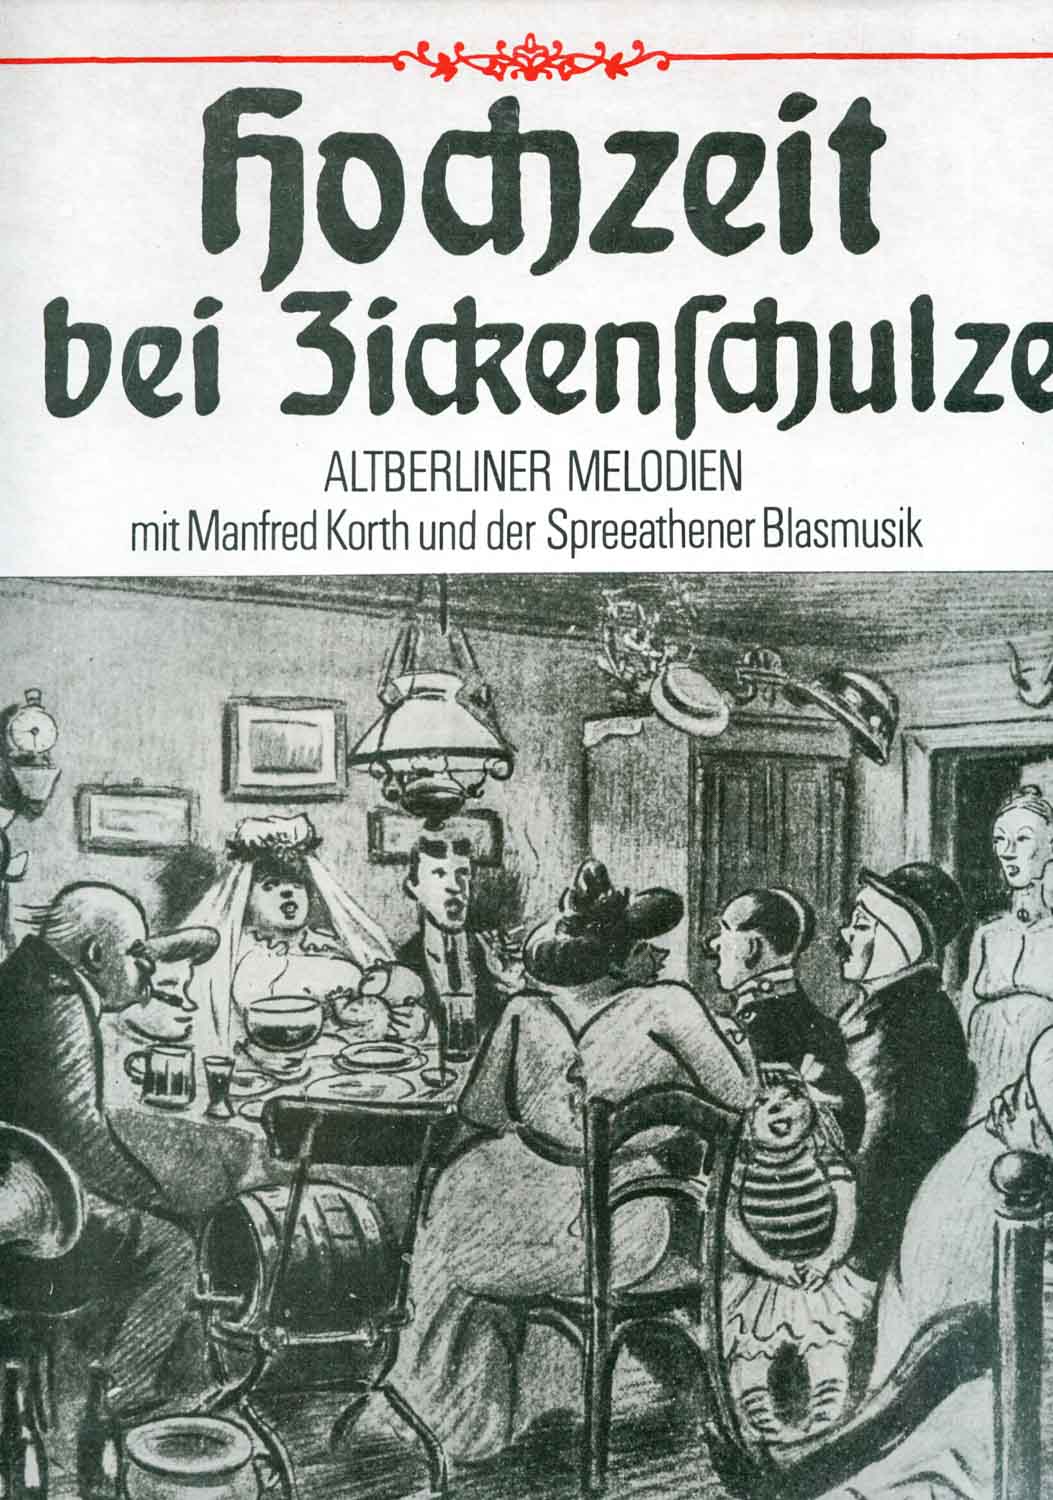 Manfred Korth, Spreeathener Blasmusik  Hochzeit bei Zickenschulze. Altberliner Melodien (8 55 898)  *LP 12'' (Vinyl)*. 